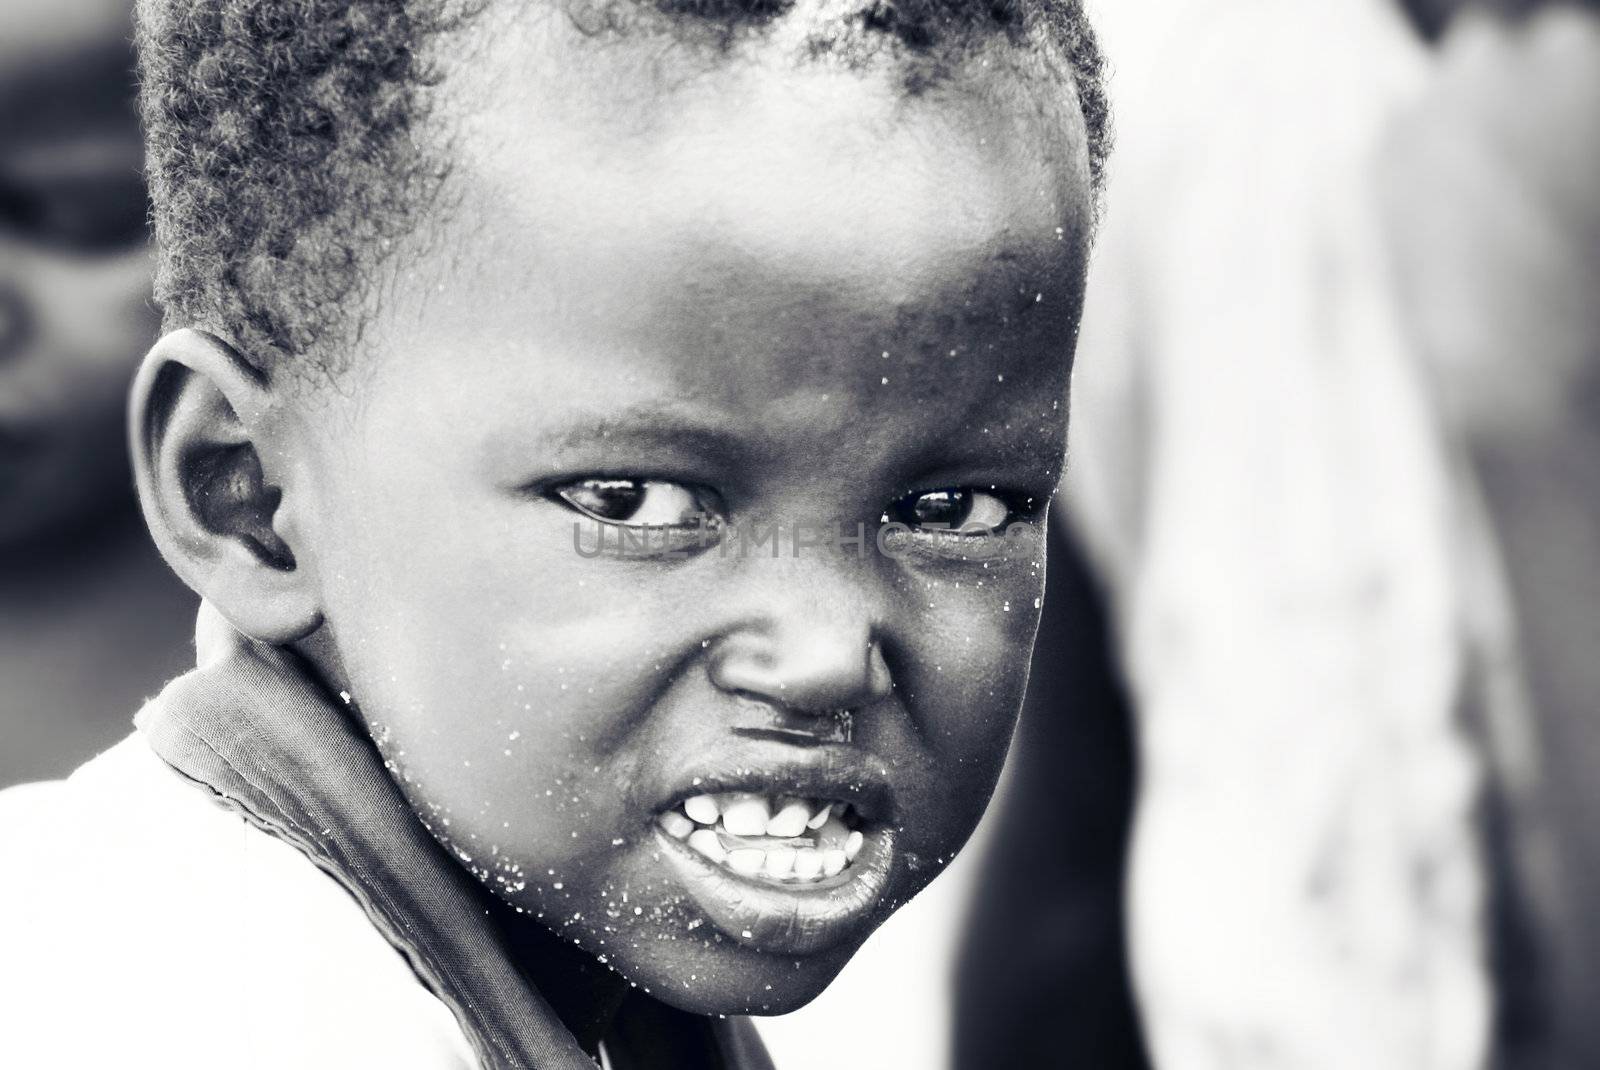 African child by Anna_Omelchenko